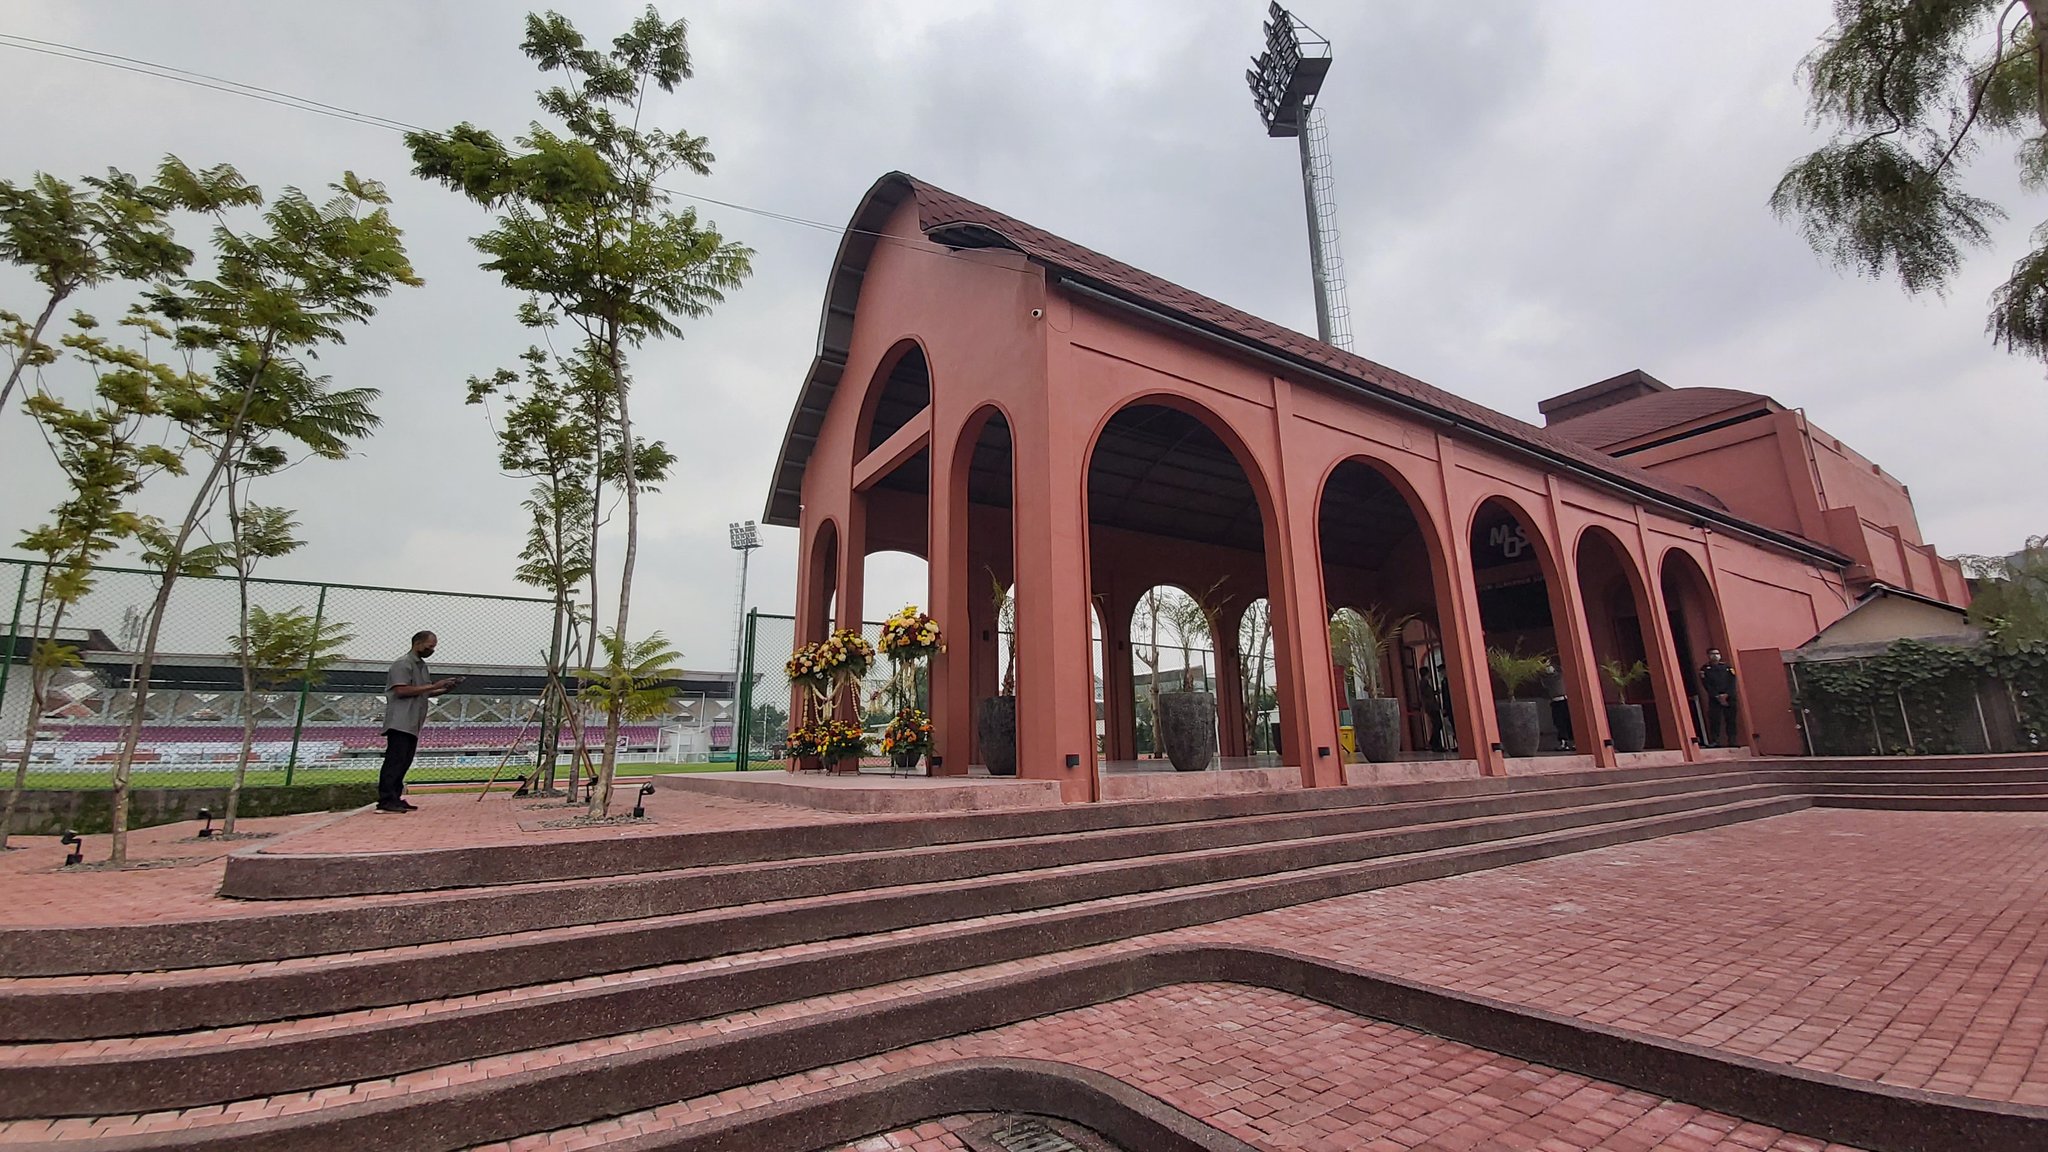 Kasus COVID-19 Tinggi, Kota Surabaya Kembali Tutup Taman hingga Museum